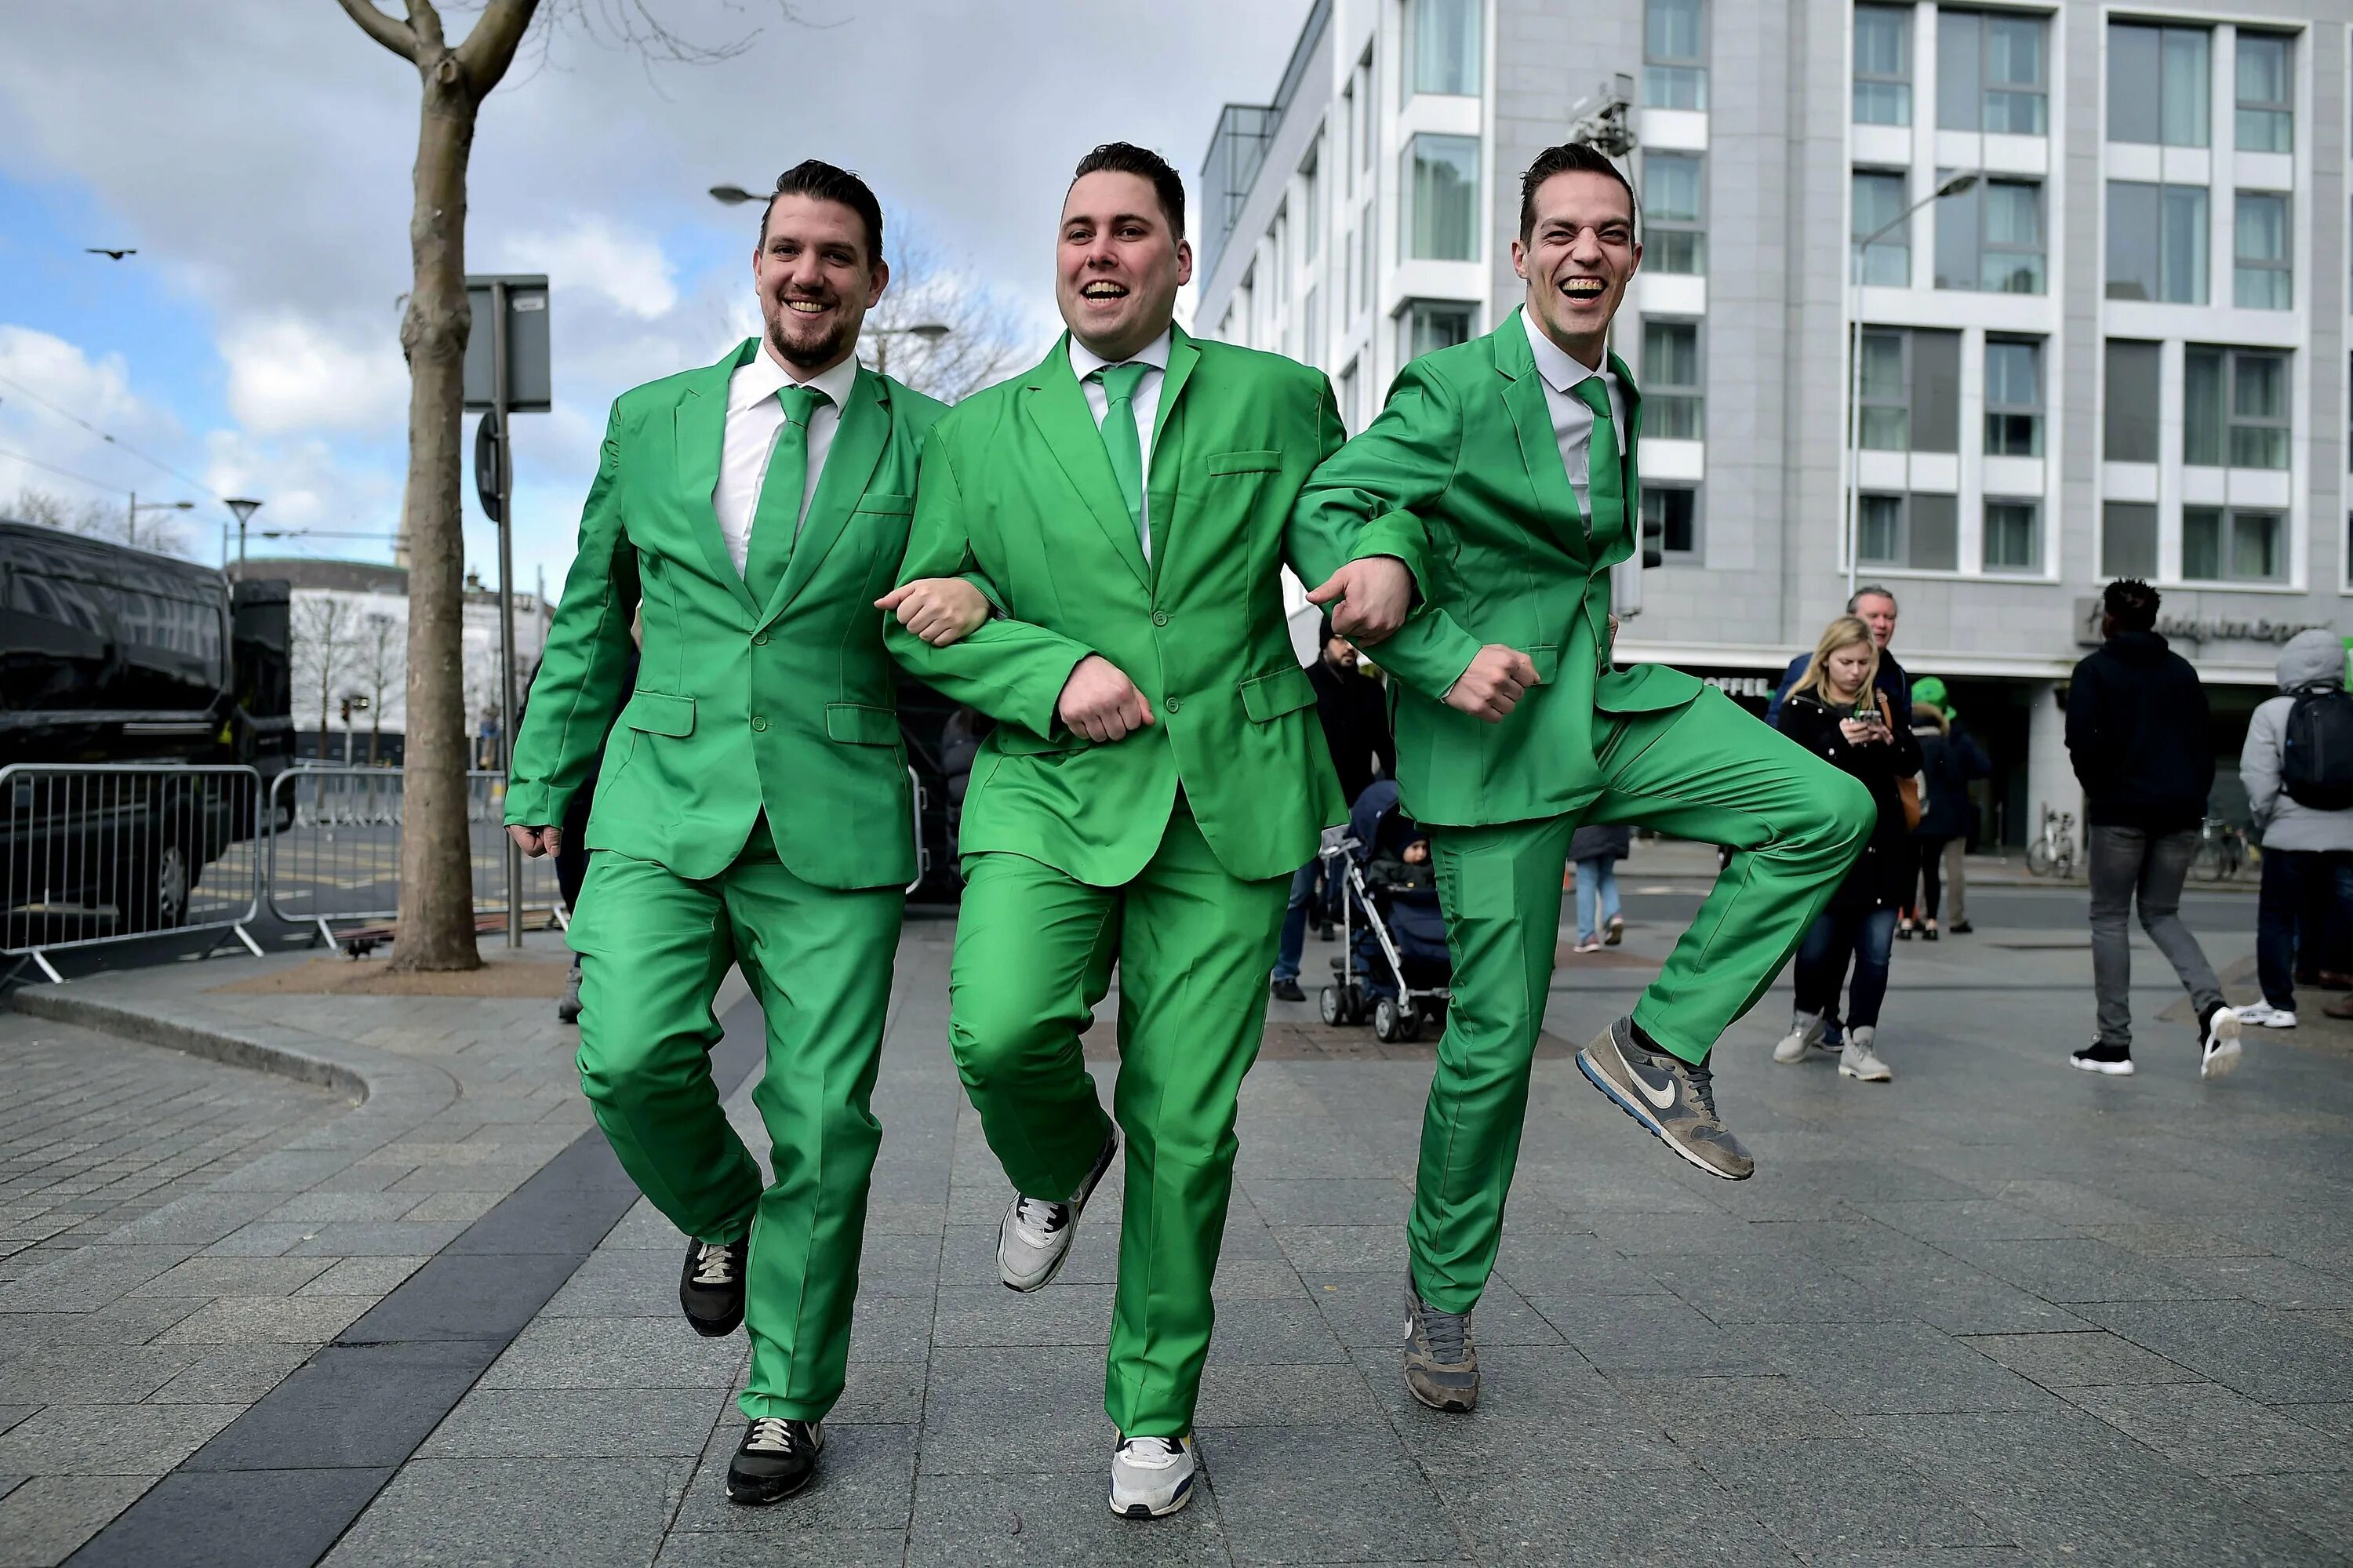 Зеленый человек это какой. День Святого Патрика в Ирландии. Одежда в Ирландии в день Святого Патрика. День Святого Патрика в Дублине. Зеленый костюм.